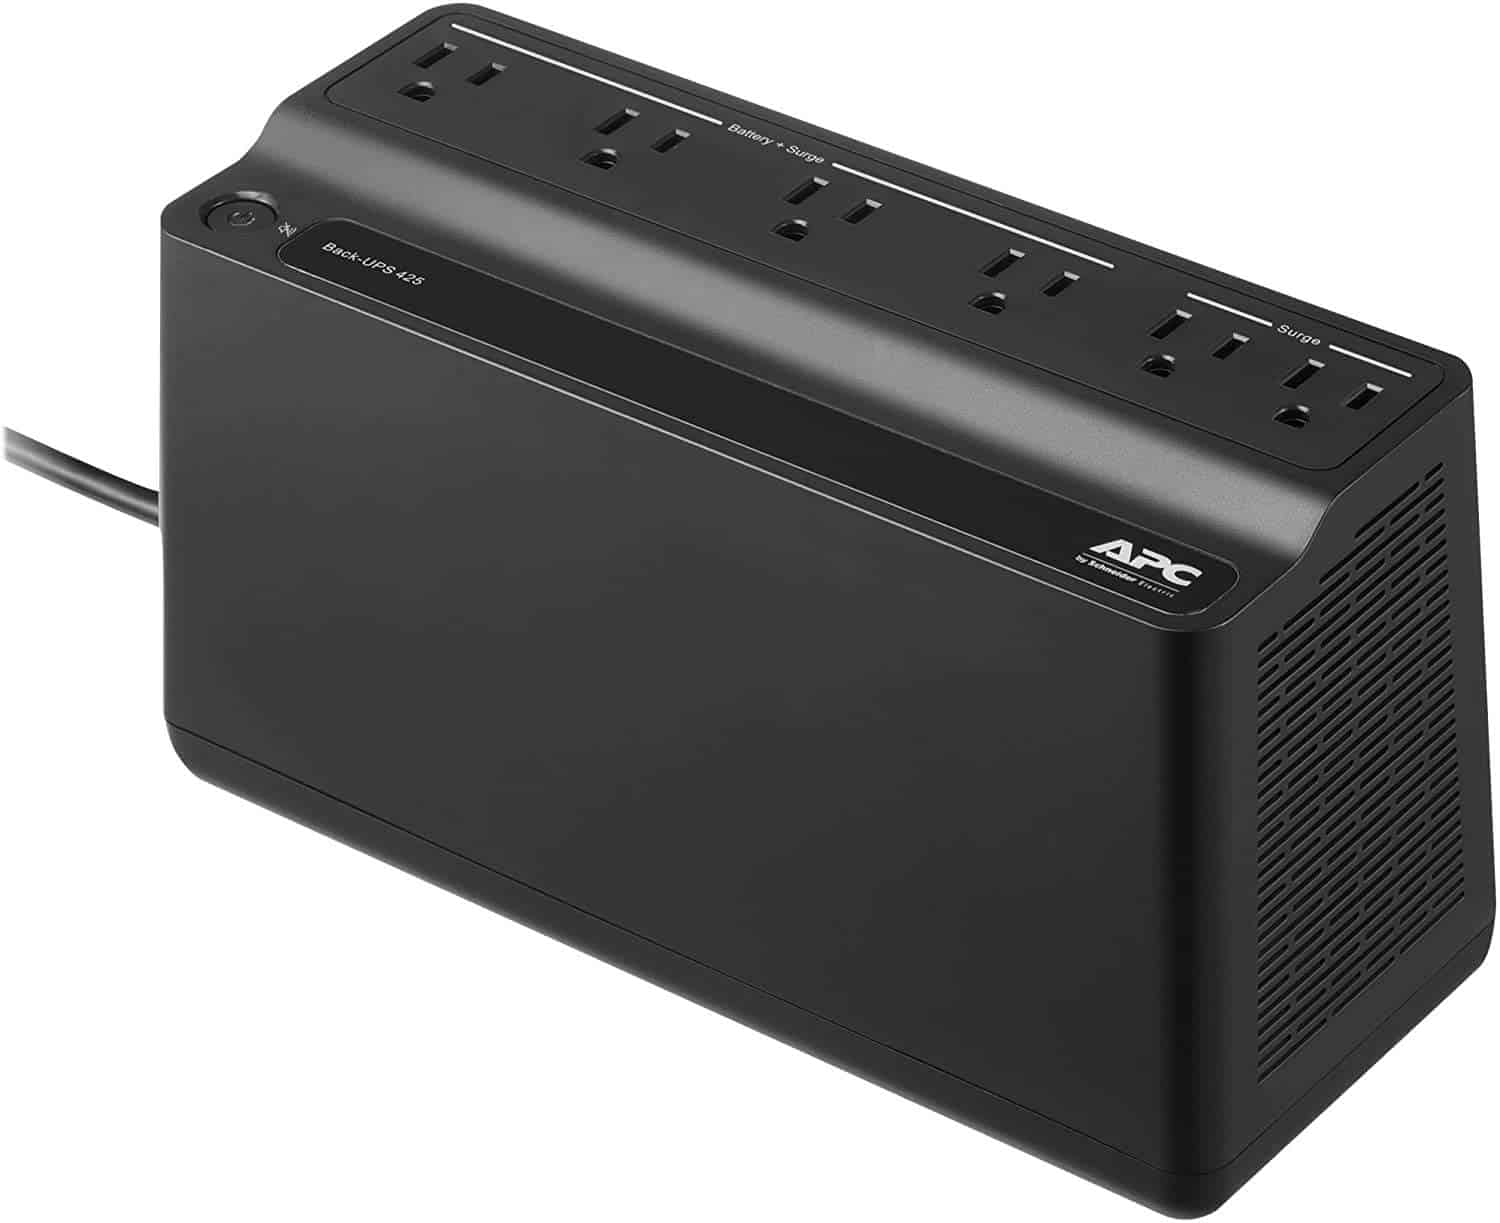 APC UPS, 425VA UPS Battery Backup Surge Protector